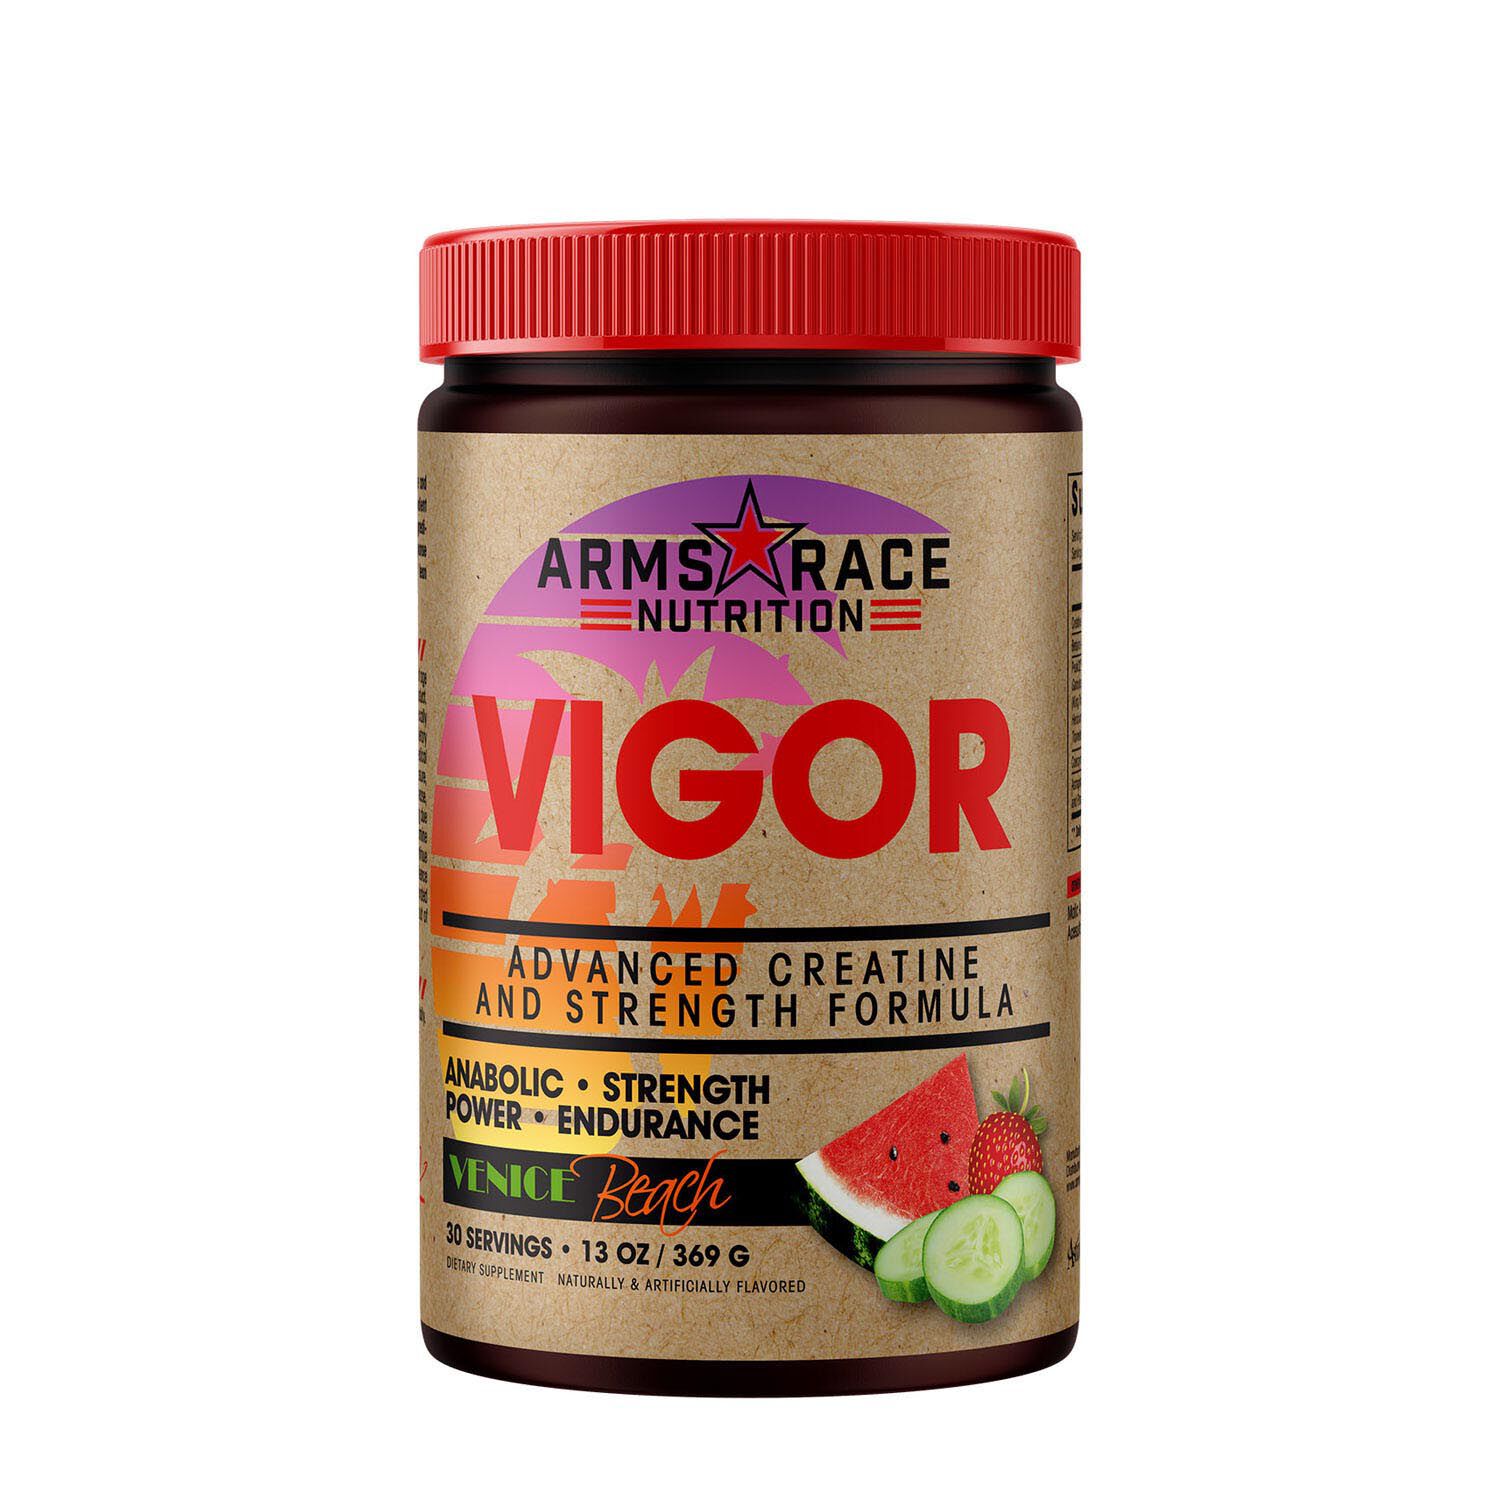 Arms Race Nutrition Vigor - Venice Beach Creatine Supplement